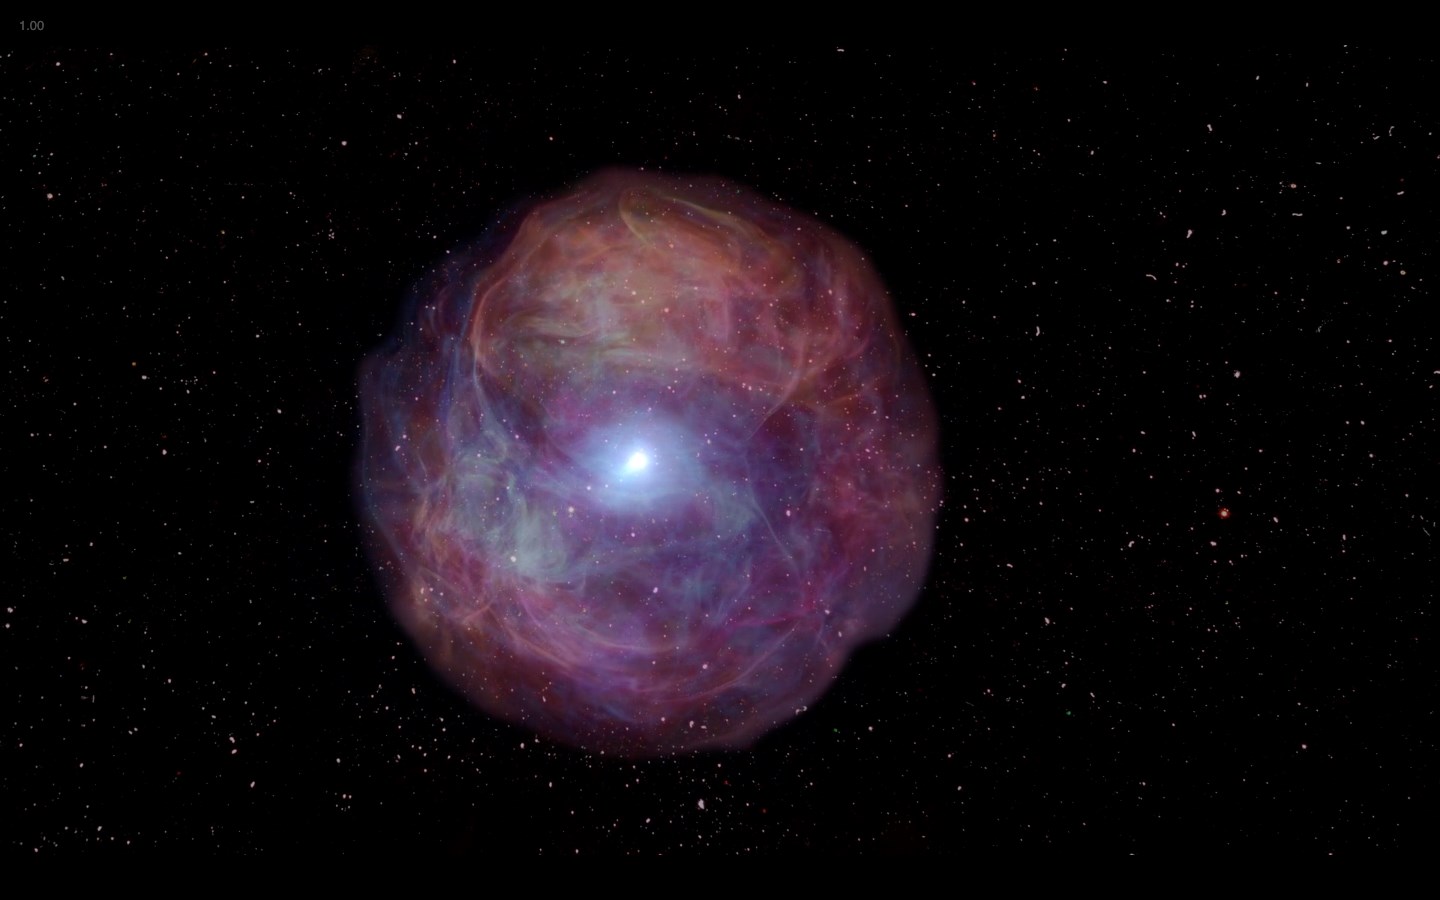 Tecnología: los instrumentos del observatorio han sido modificados, capturando accidentalmente la supernova más brillante del mundo hasta la fecha.